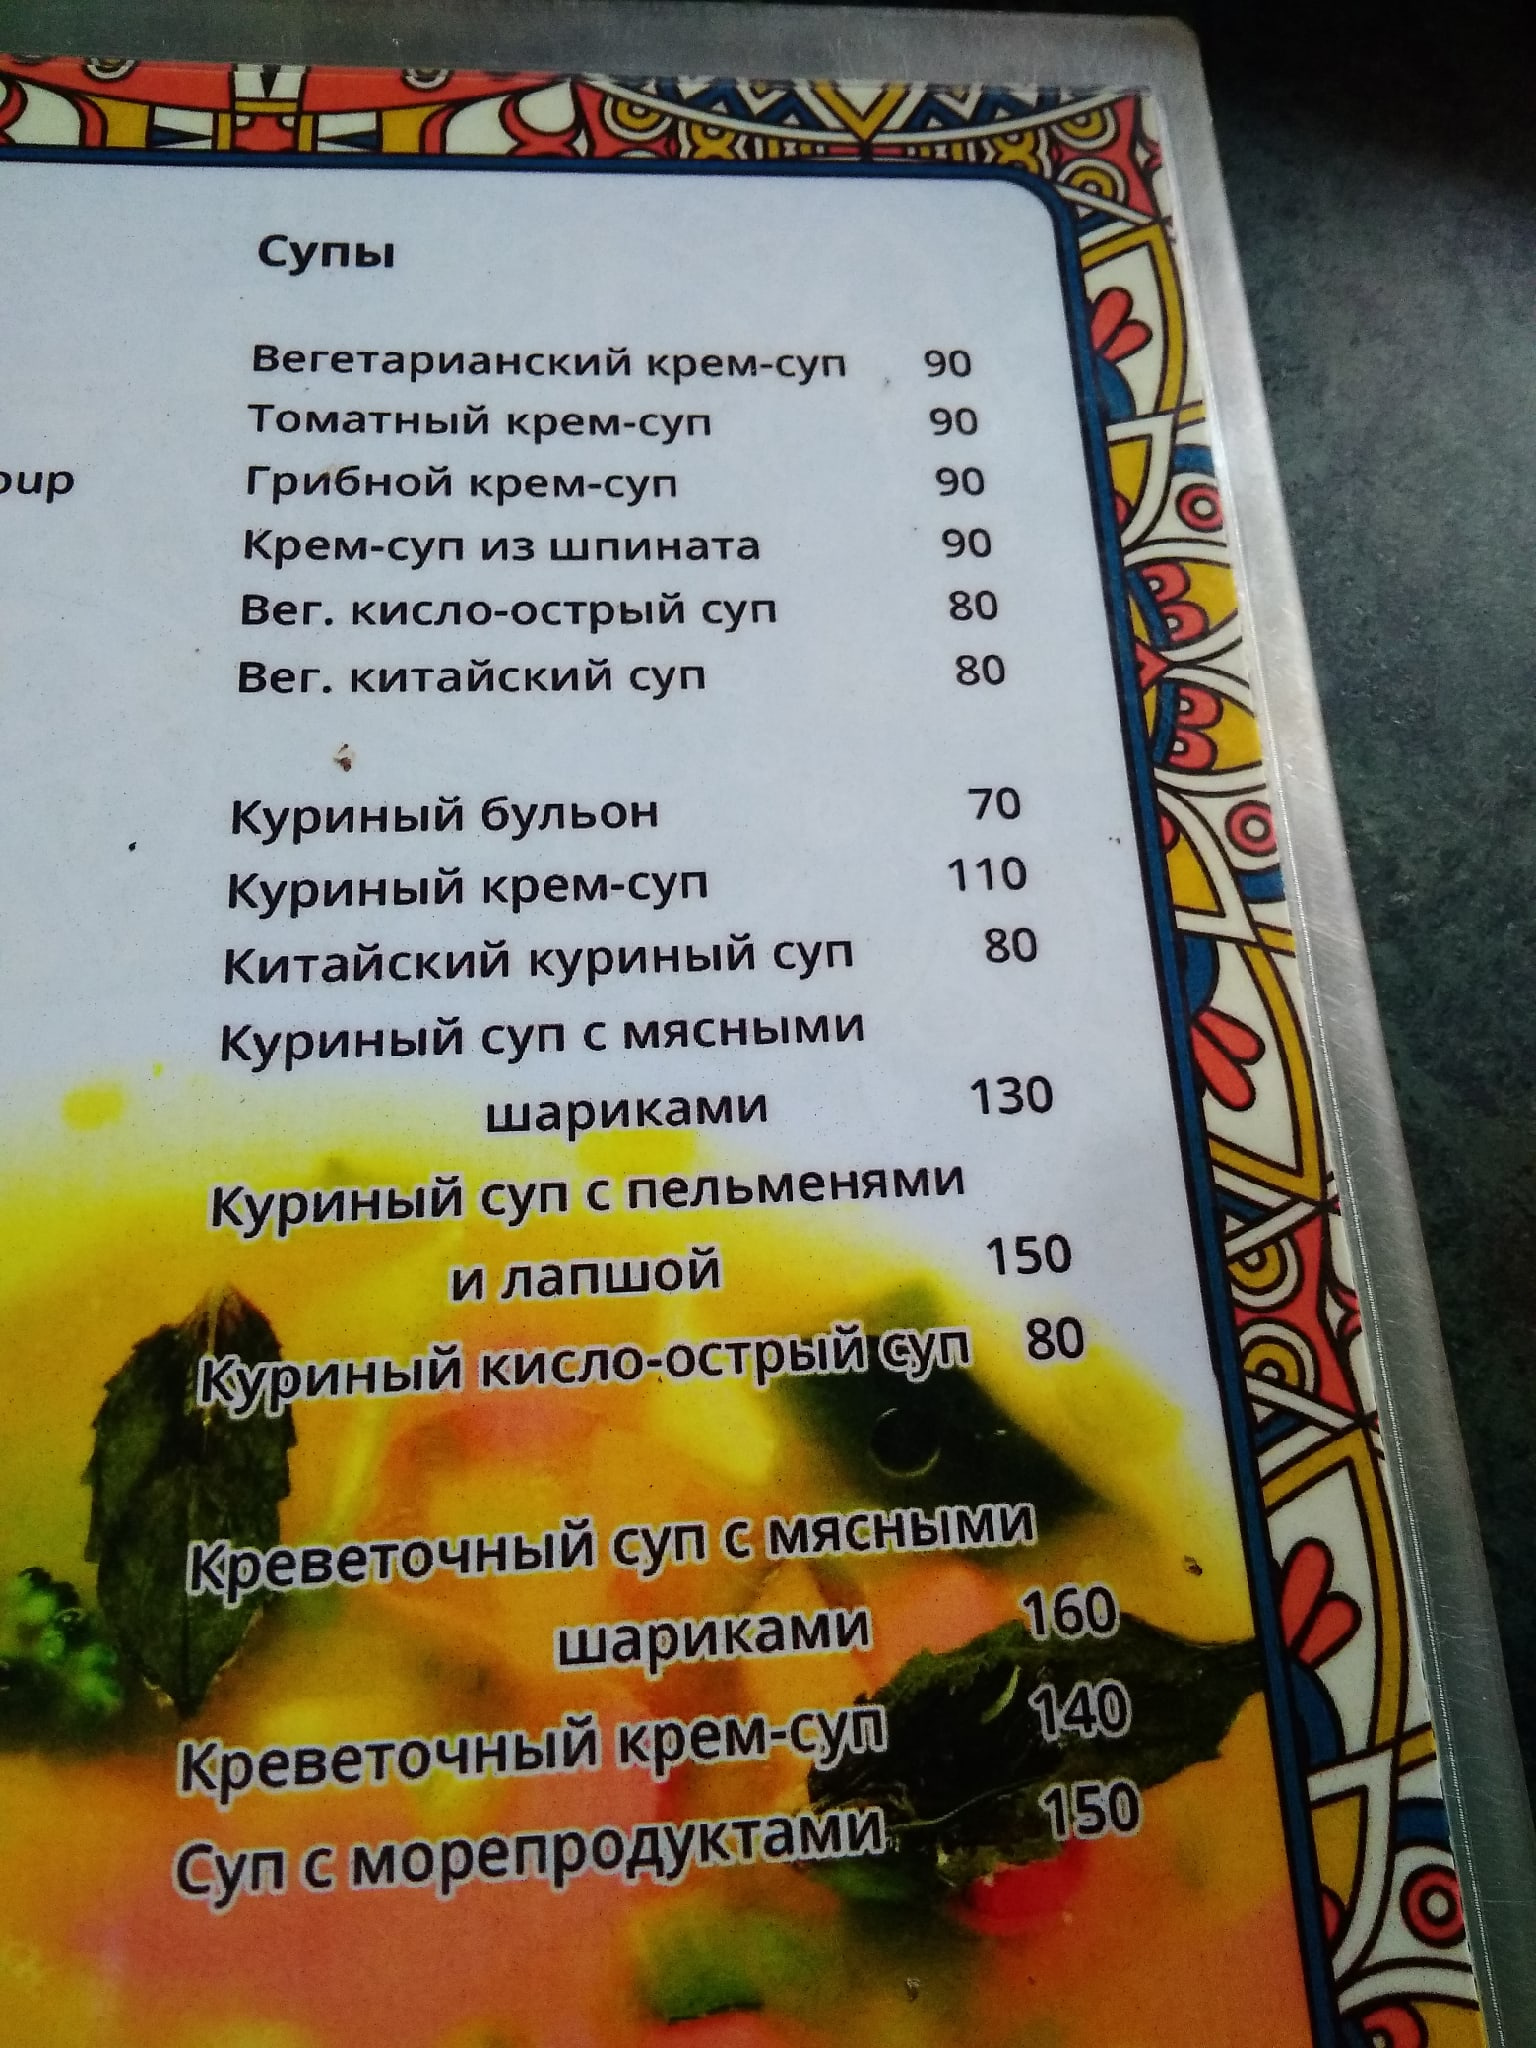 Меню в местных кафе написано на русском